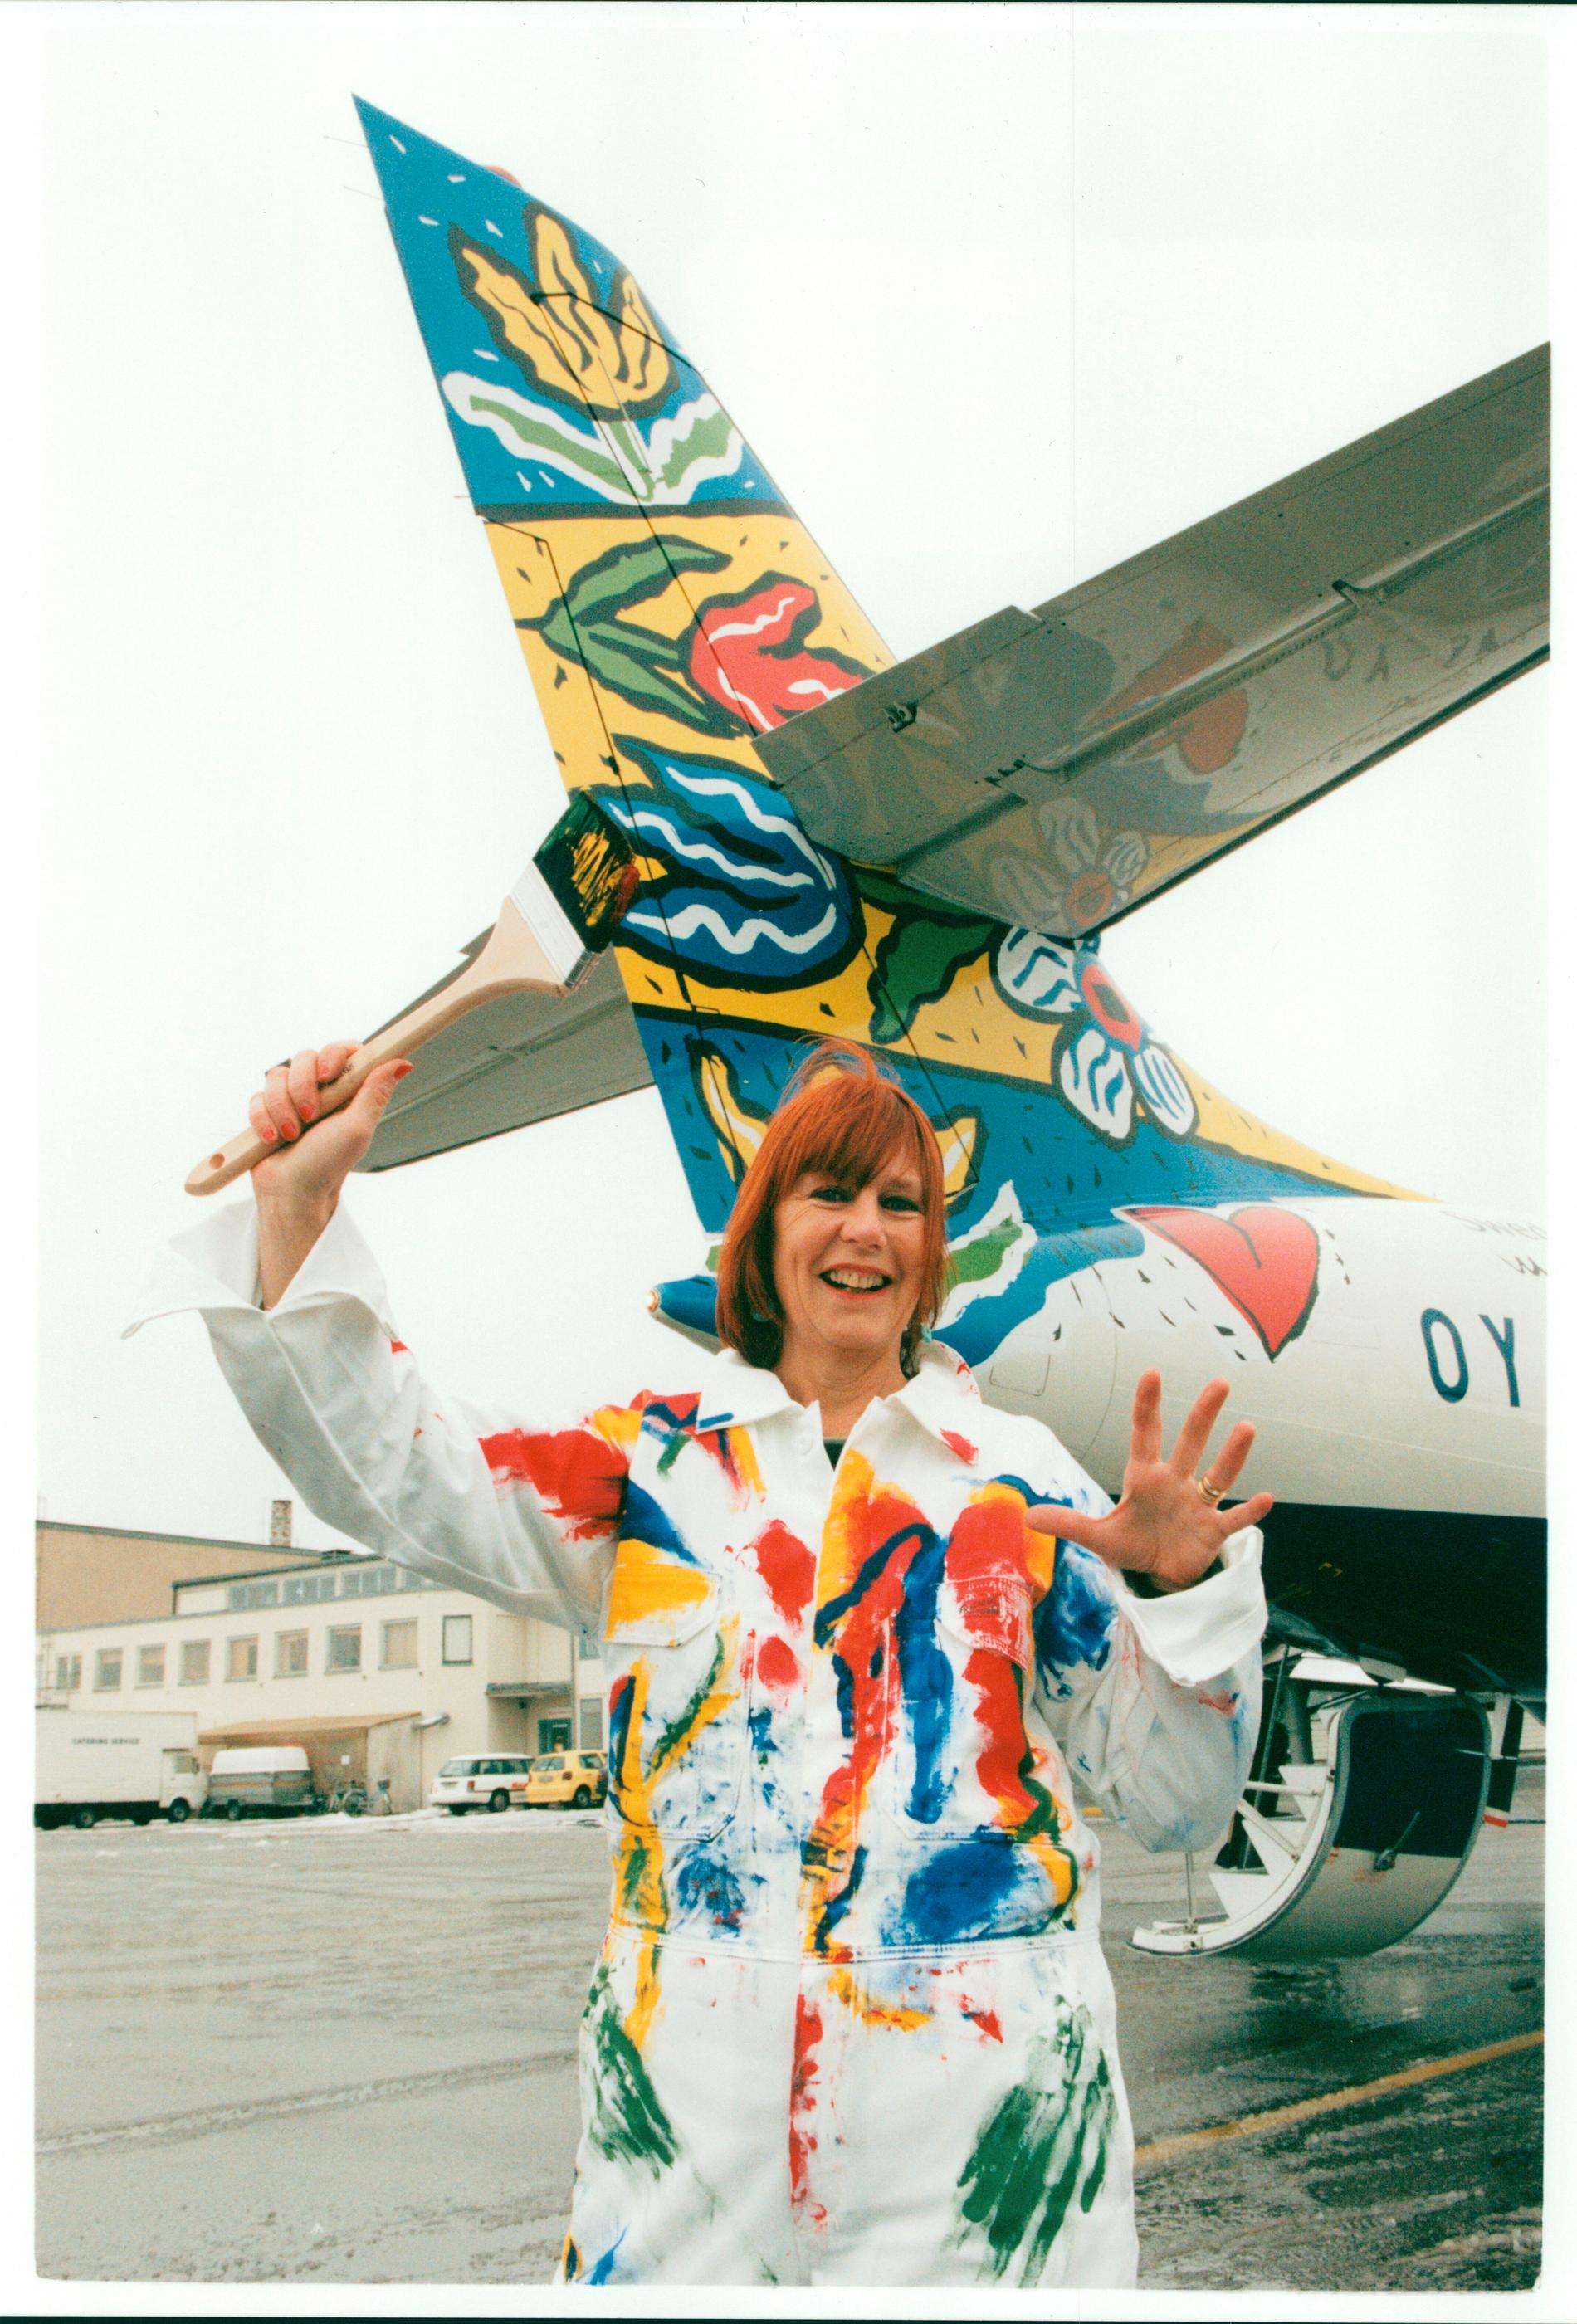 1995 målade Hydman Vallien ett flygplan från Brittish airways.